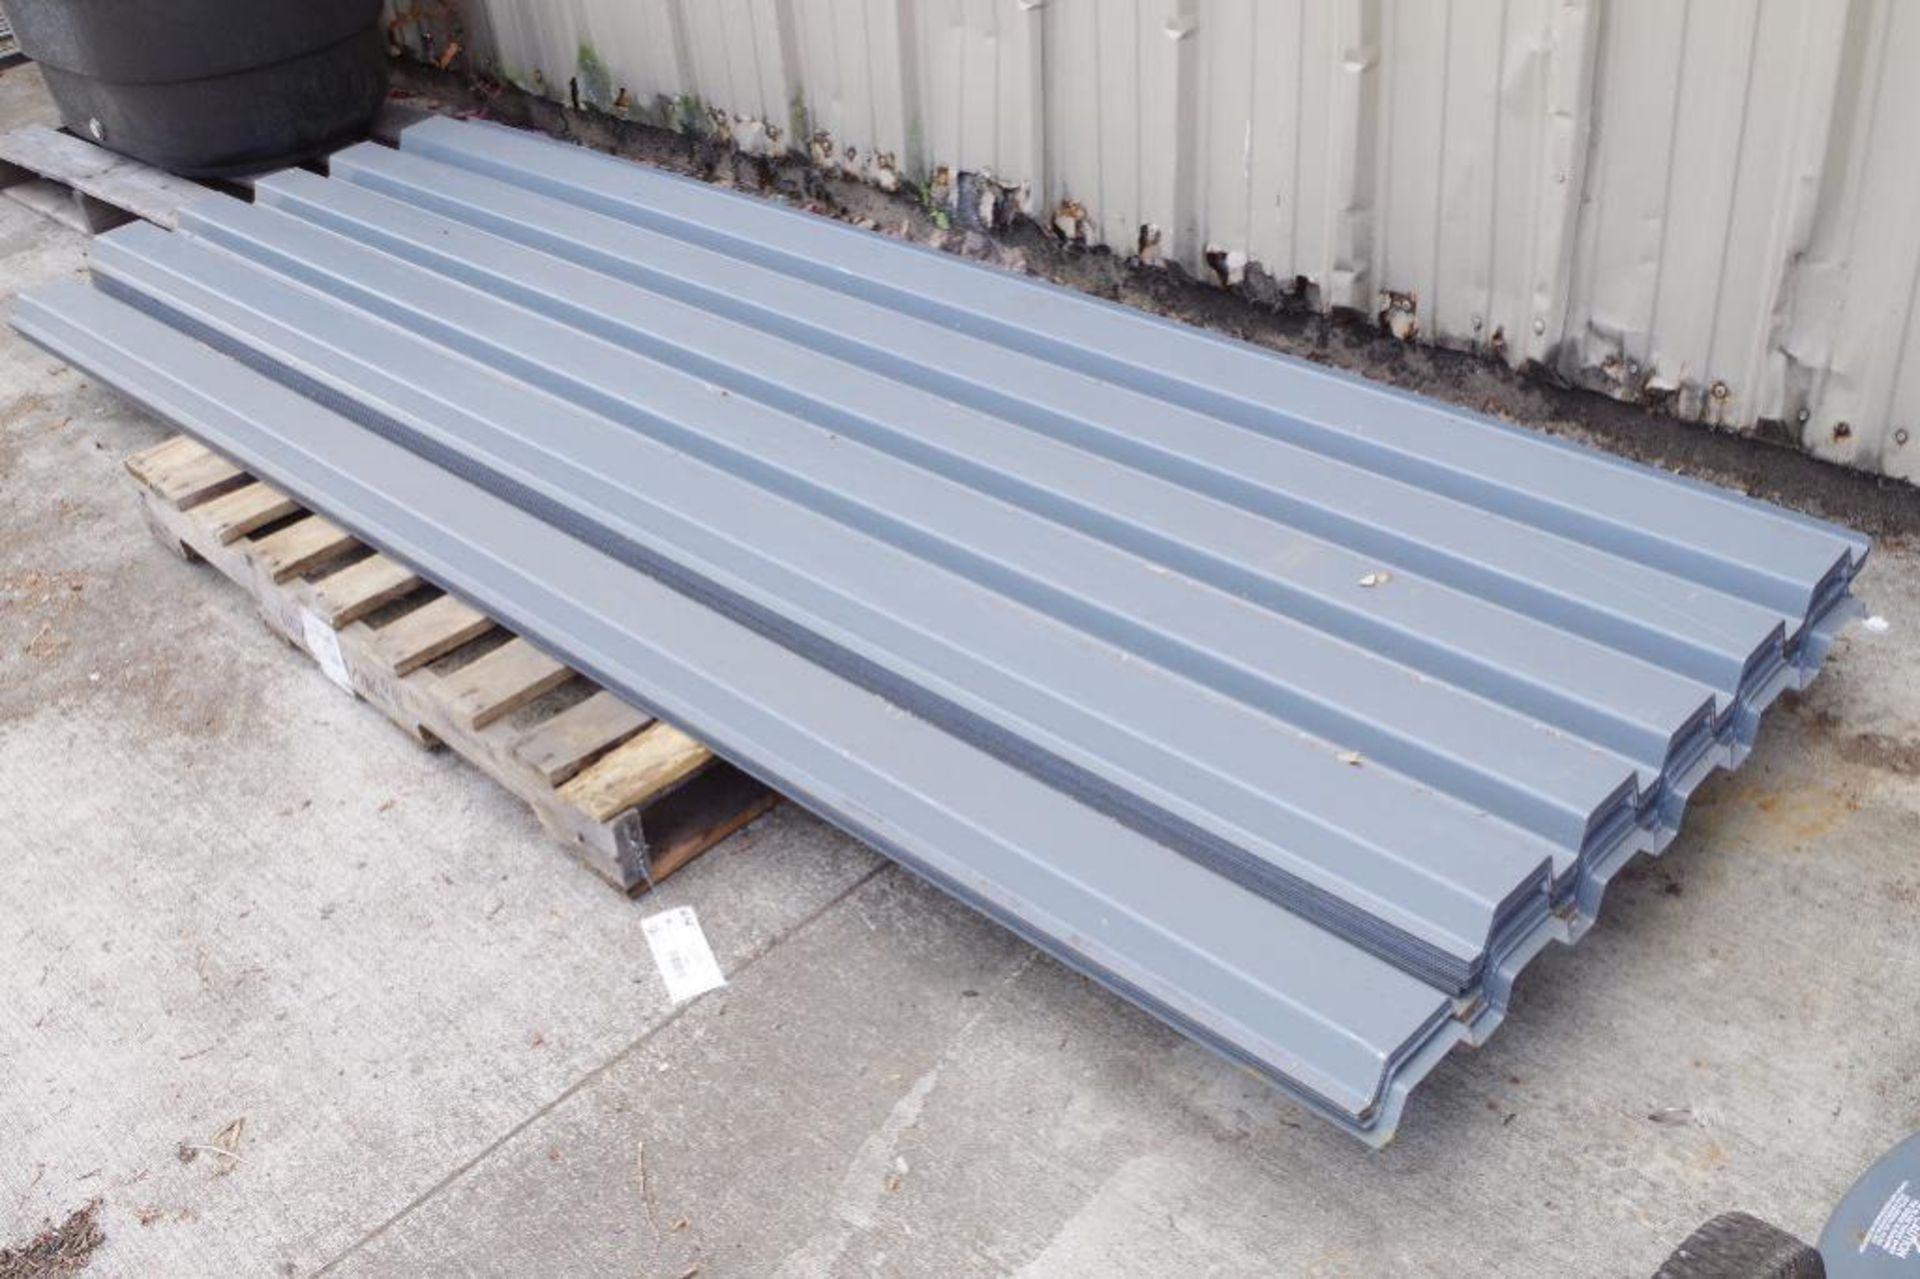 (16) Corrugated Steel Roof Panels: (11) 104" L x 31" W, (5) 104" L x 37" W